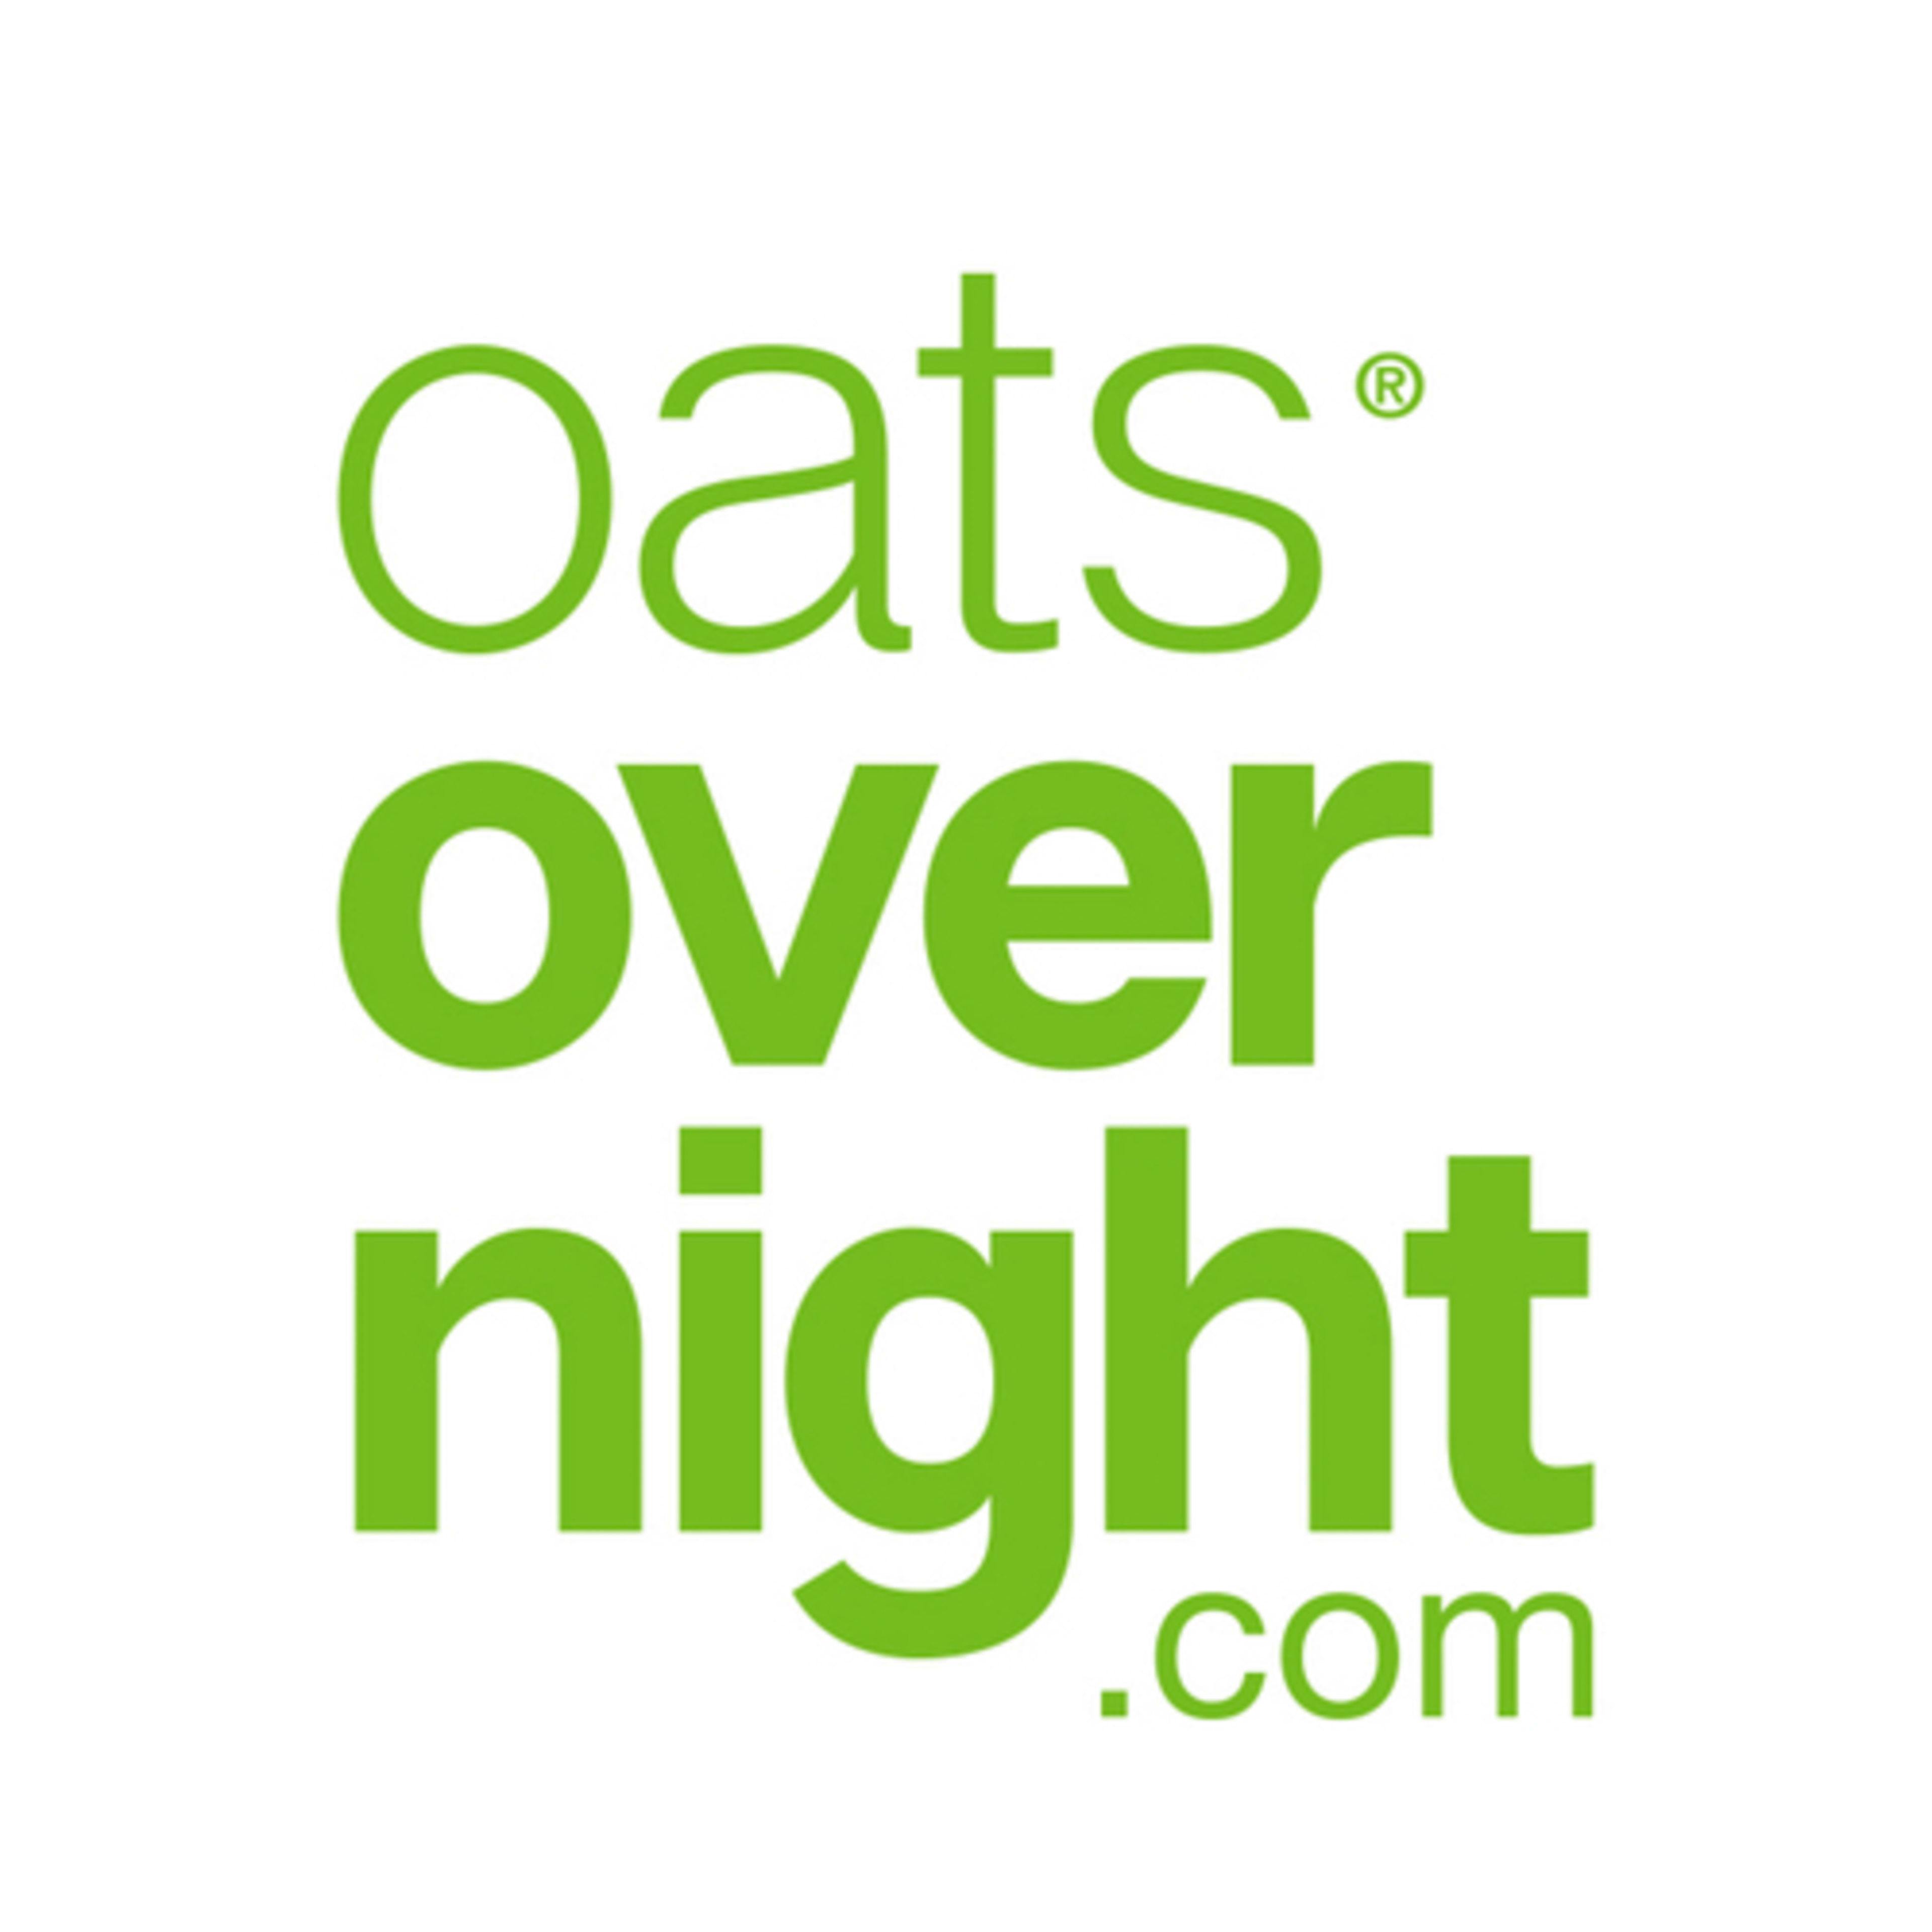 Oats OvernightCode